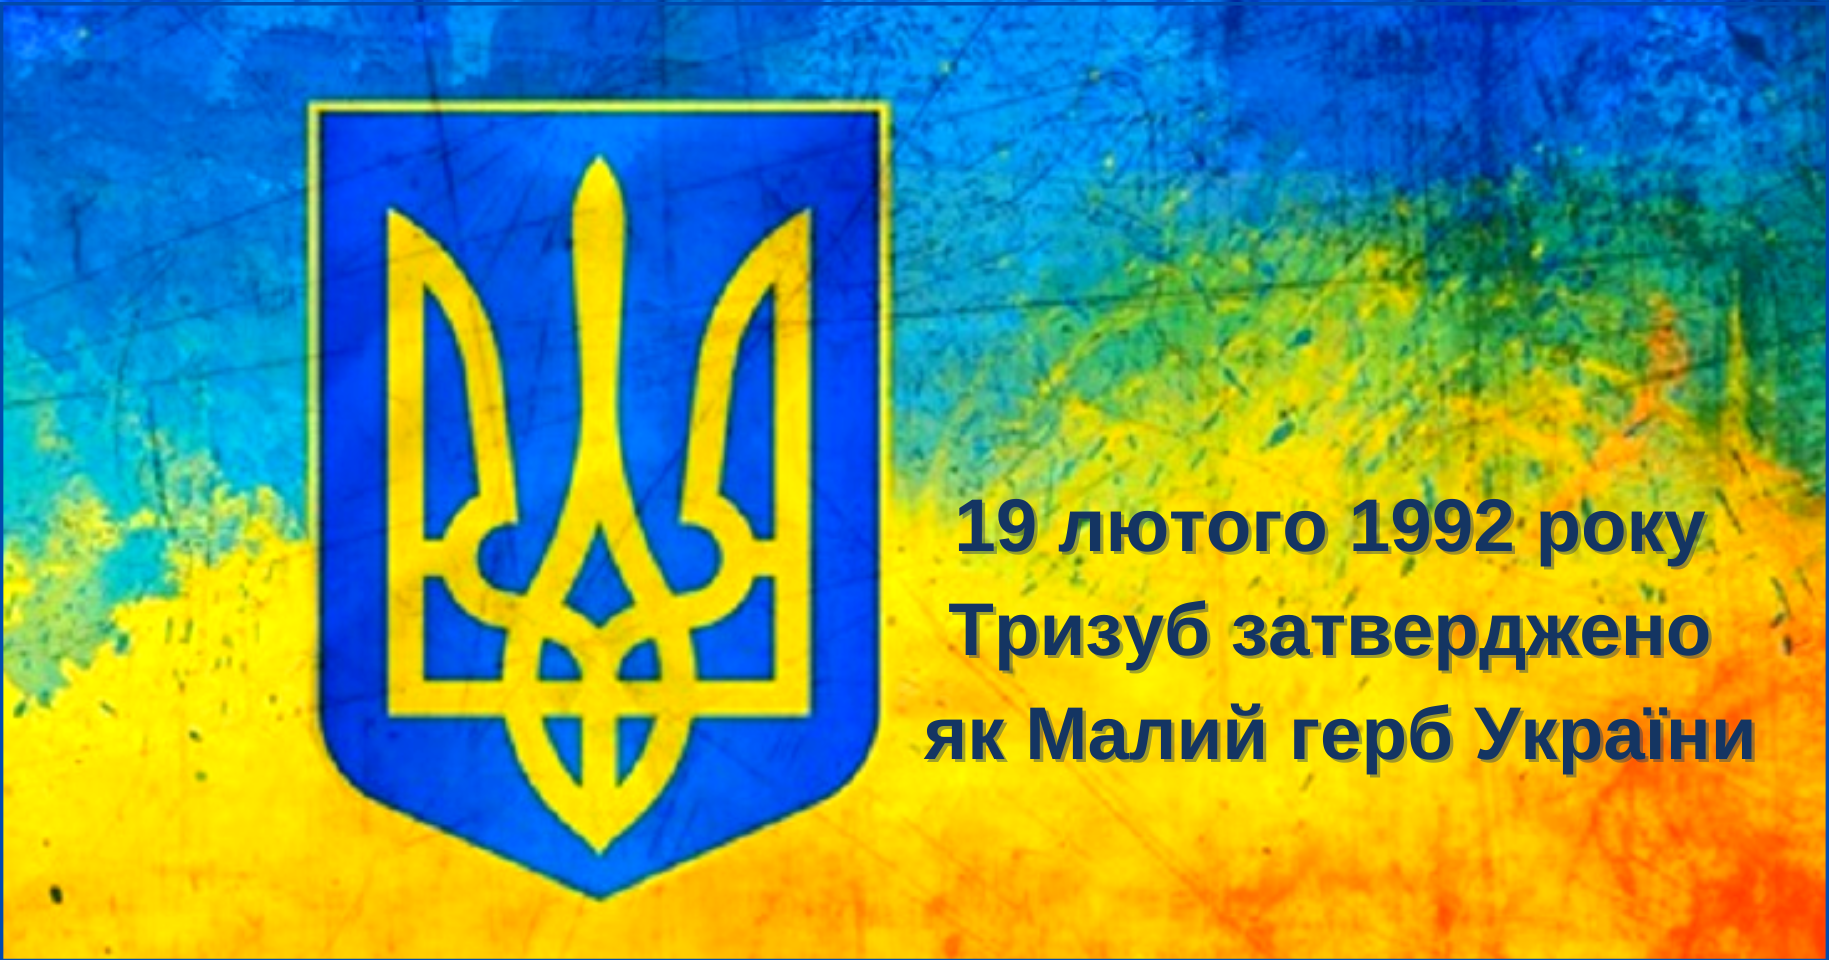 19 лютого 1992 року Тризуб затверджено як Малий герб України